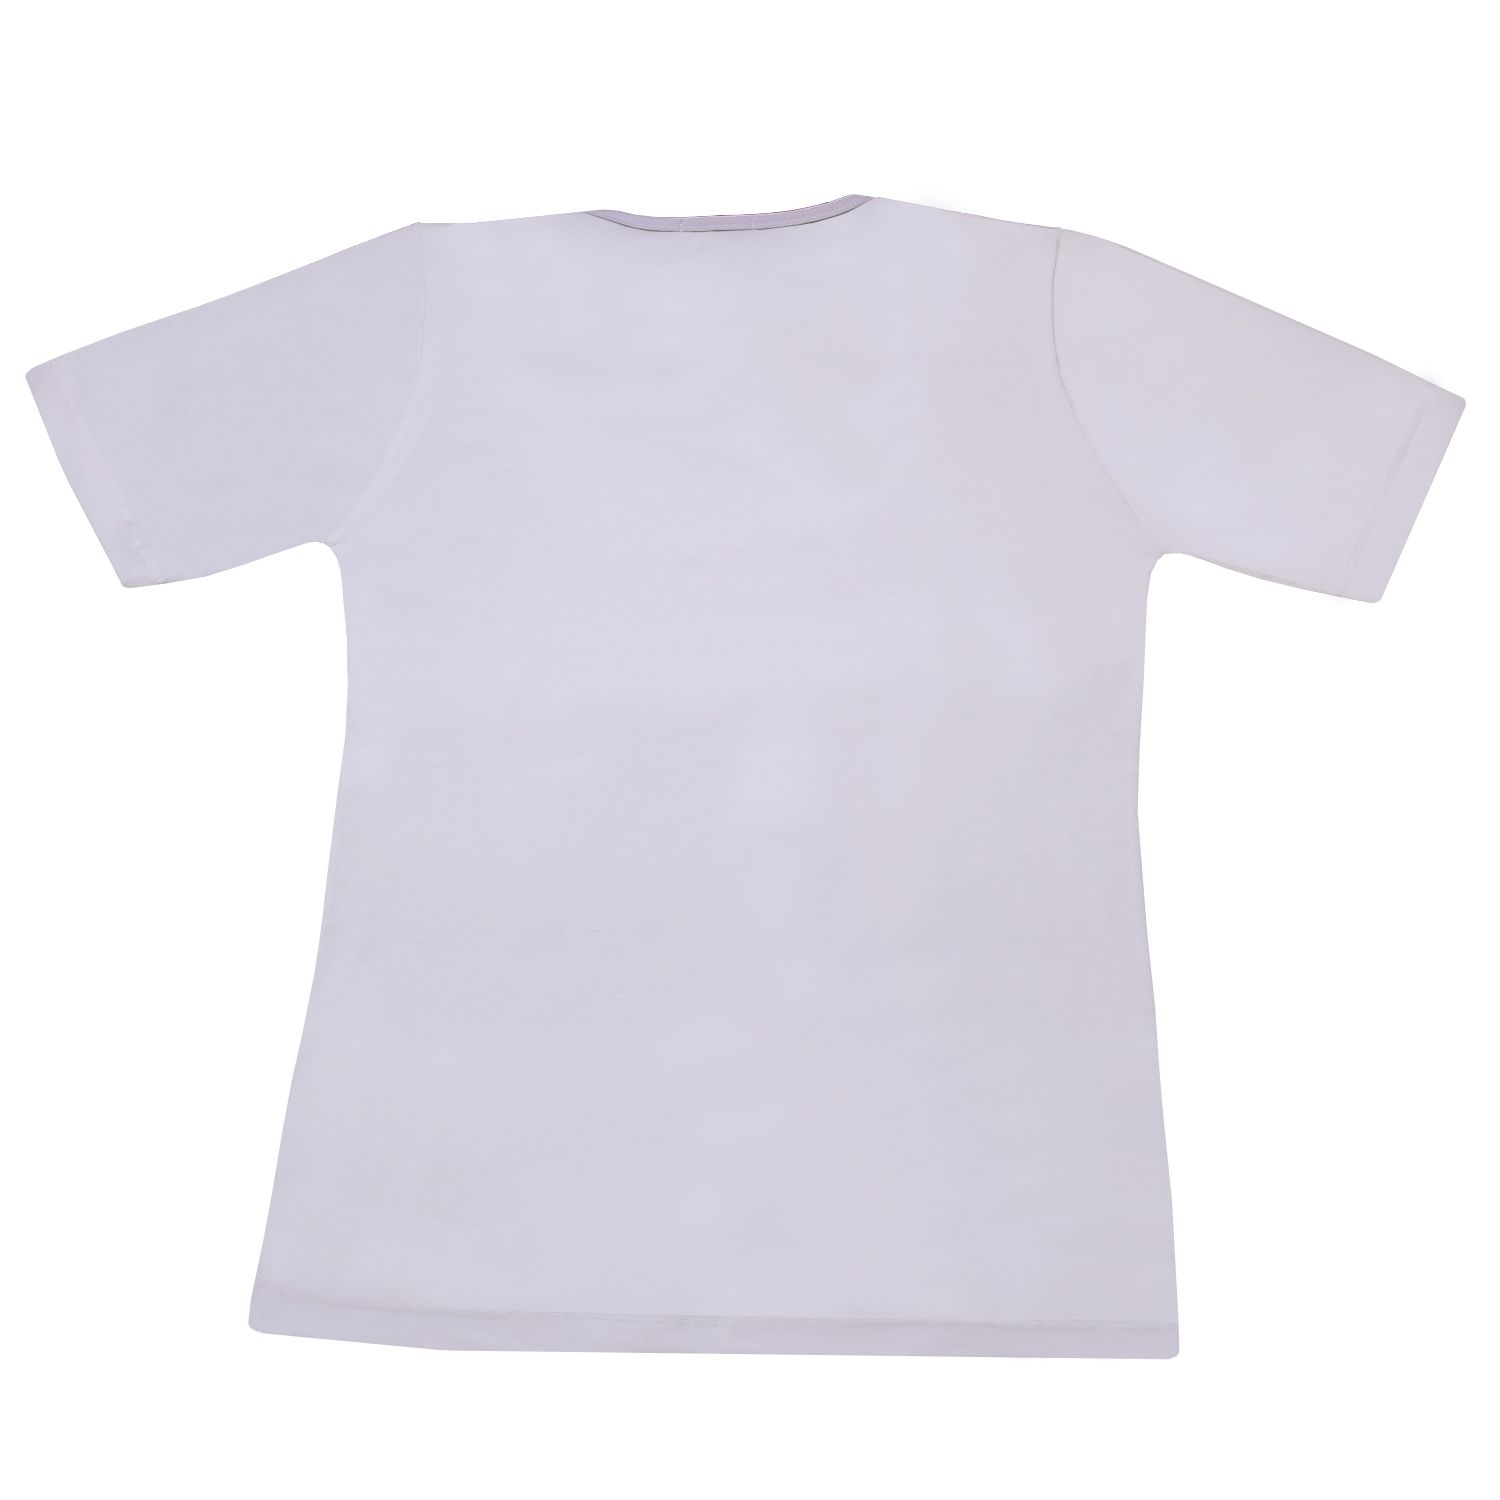 تی شرت زنانه کد 21702 رنگ سفید -  - 2